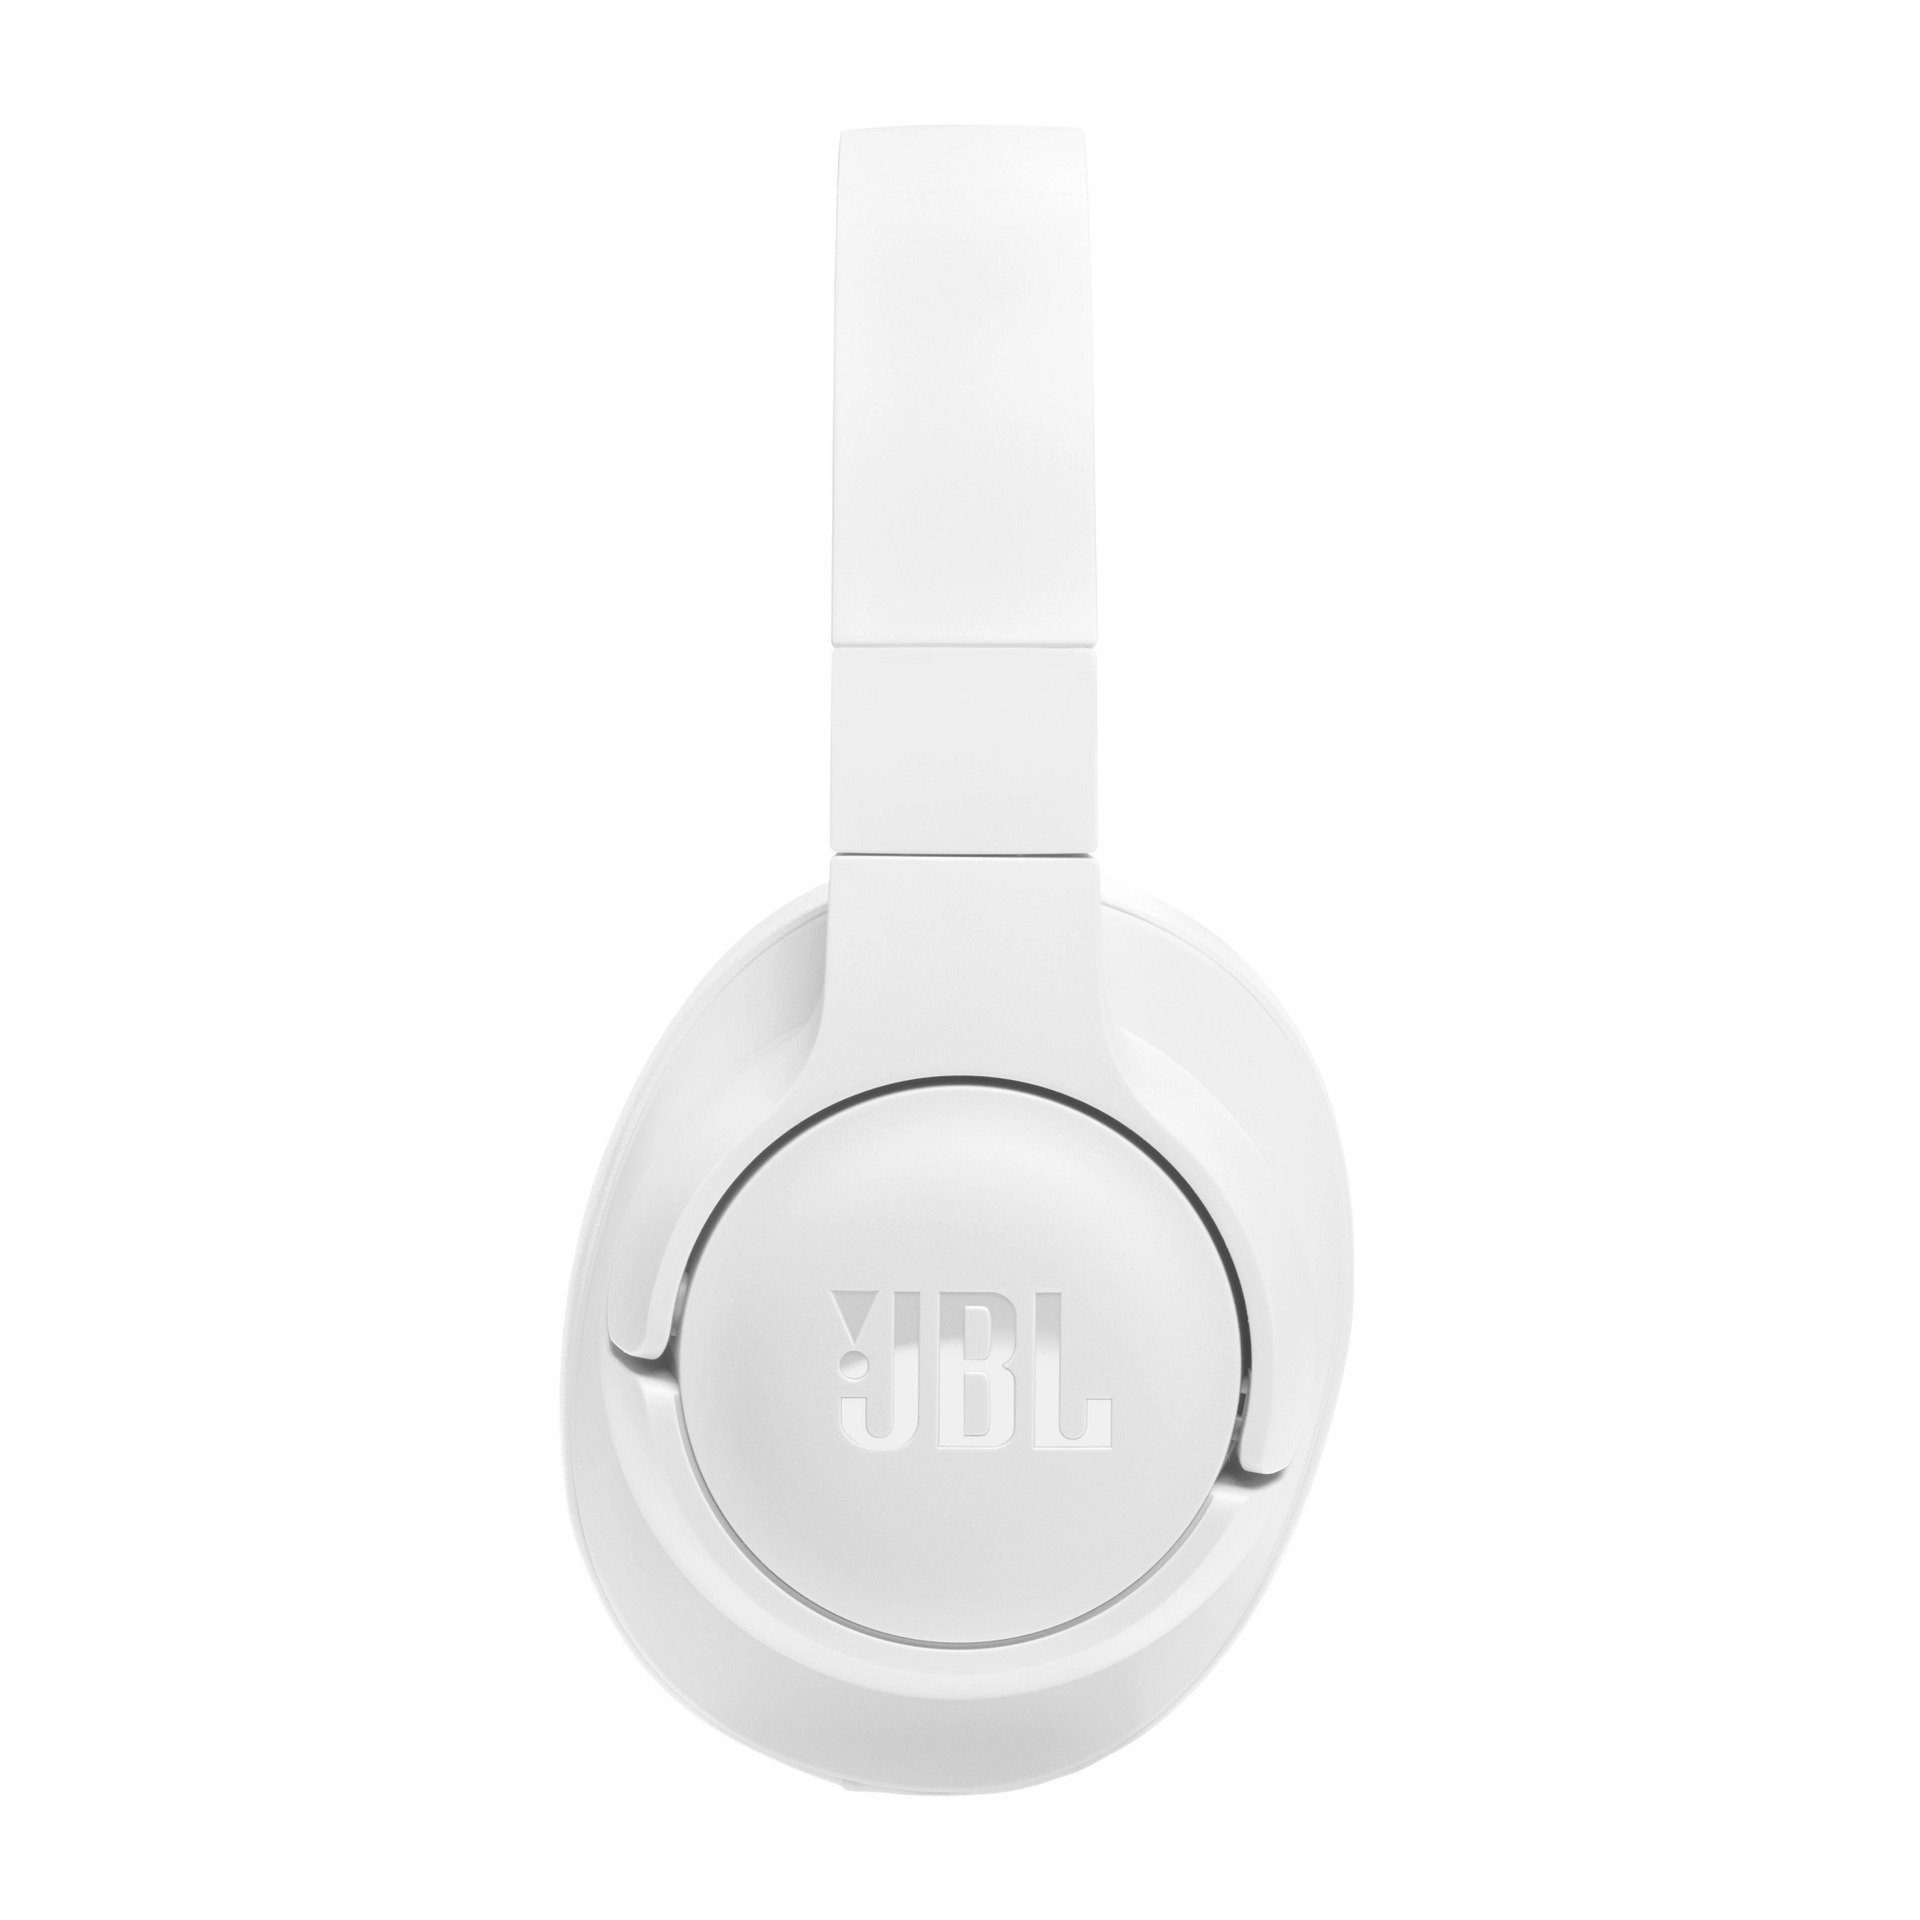 720 Tune Over-Ear-Kopfhörer Weiß JBL BT